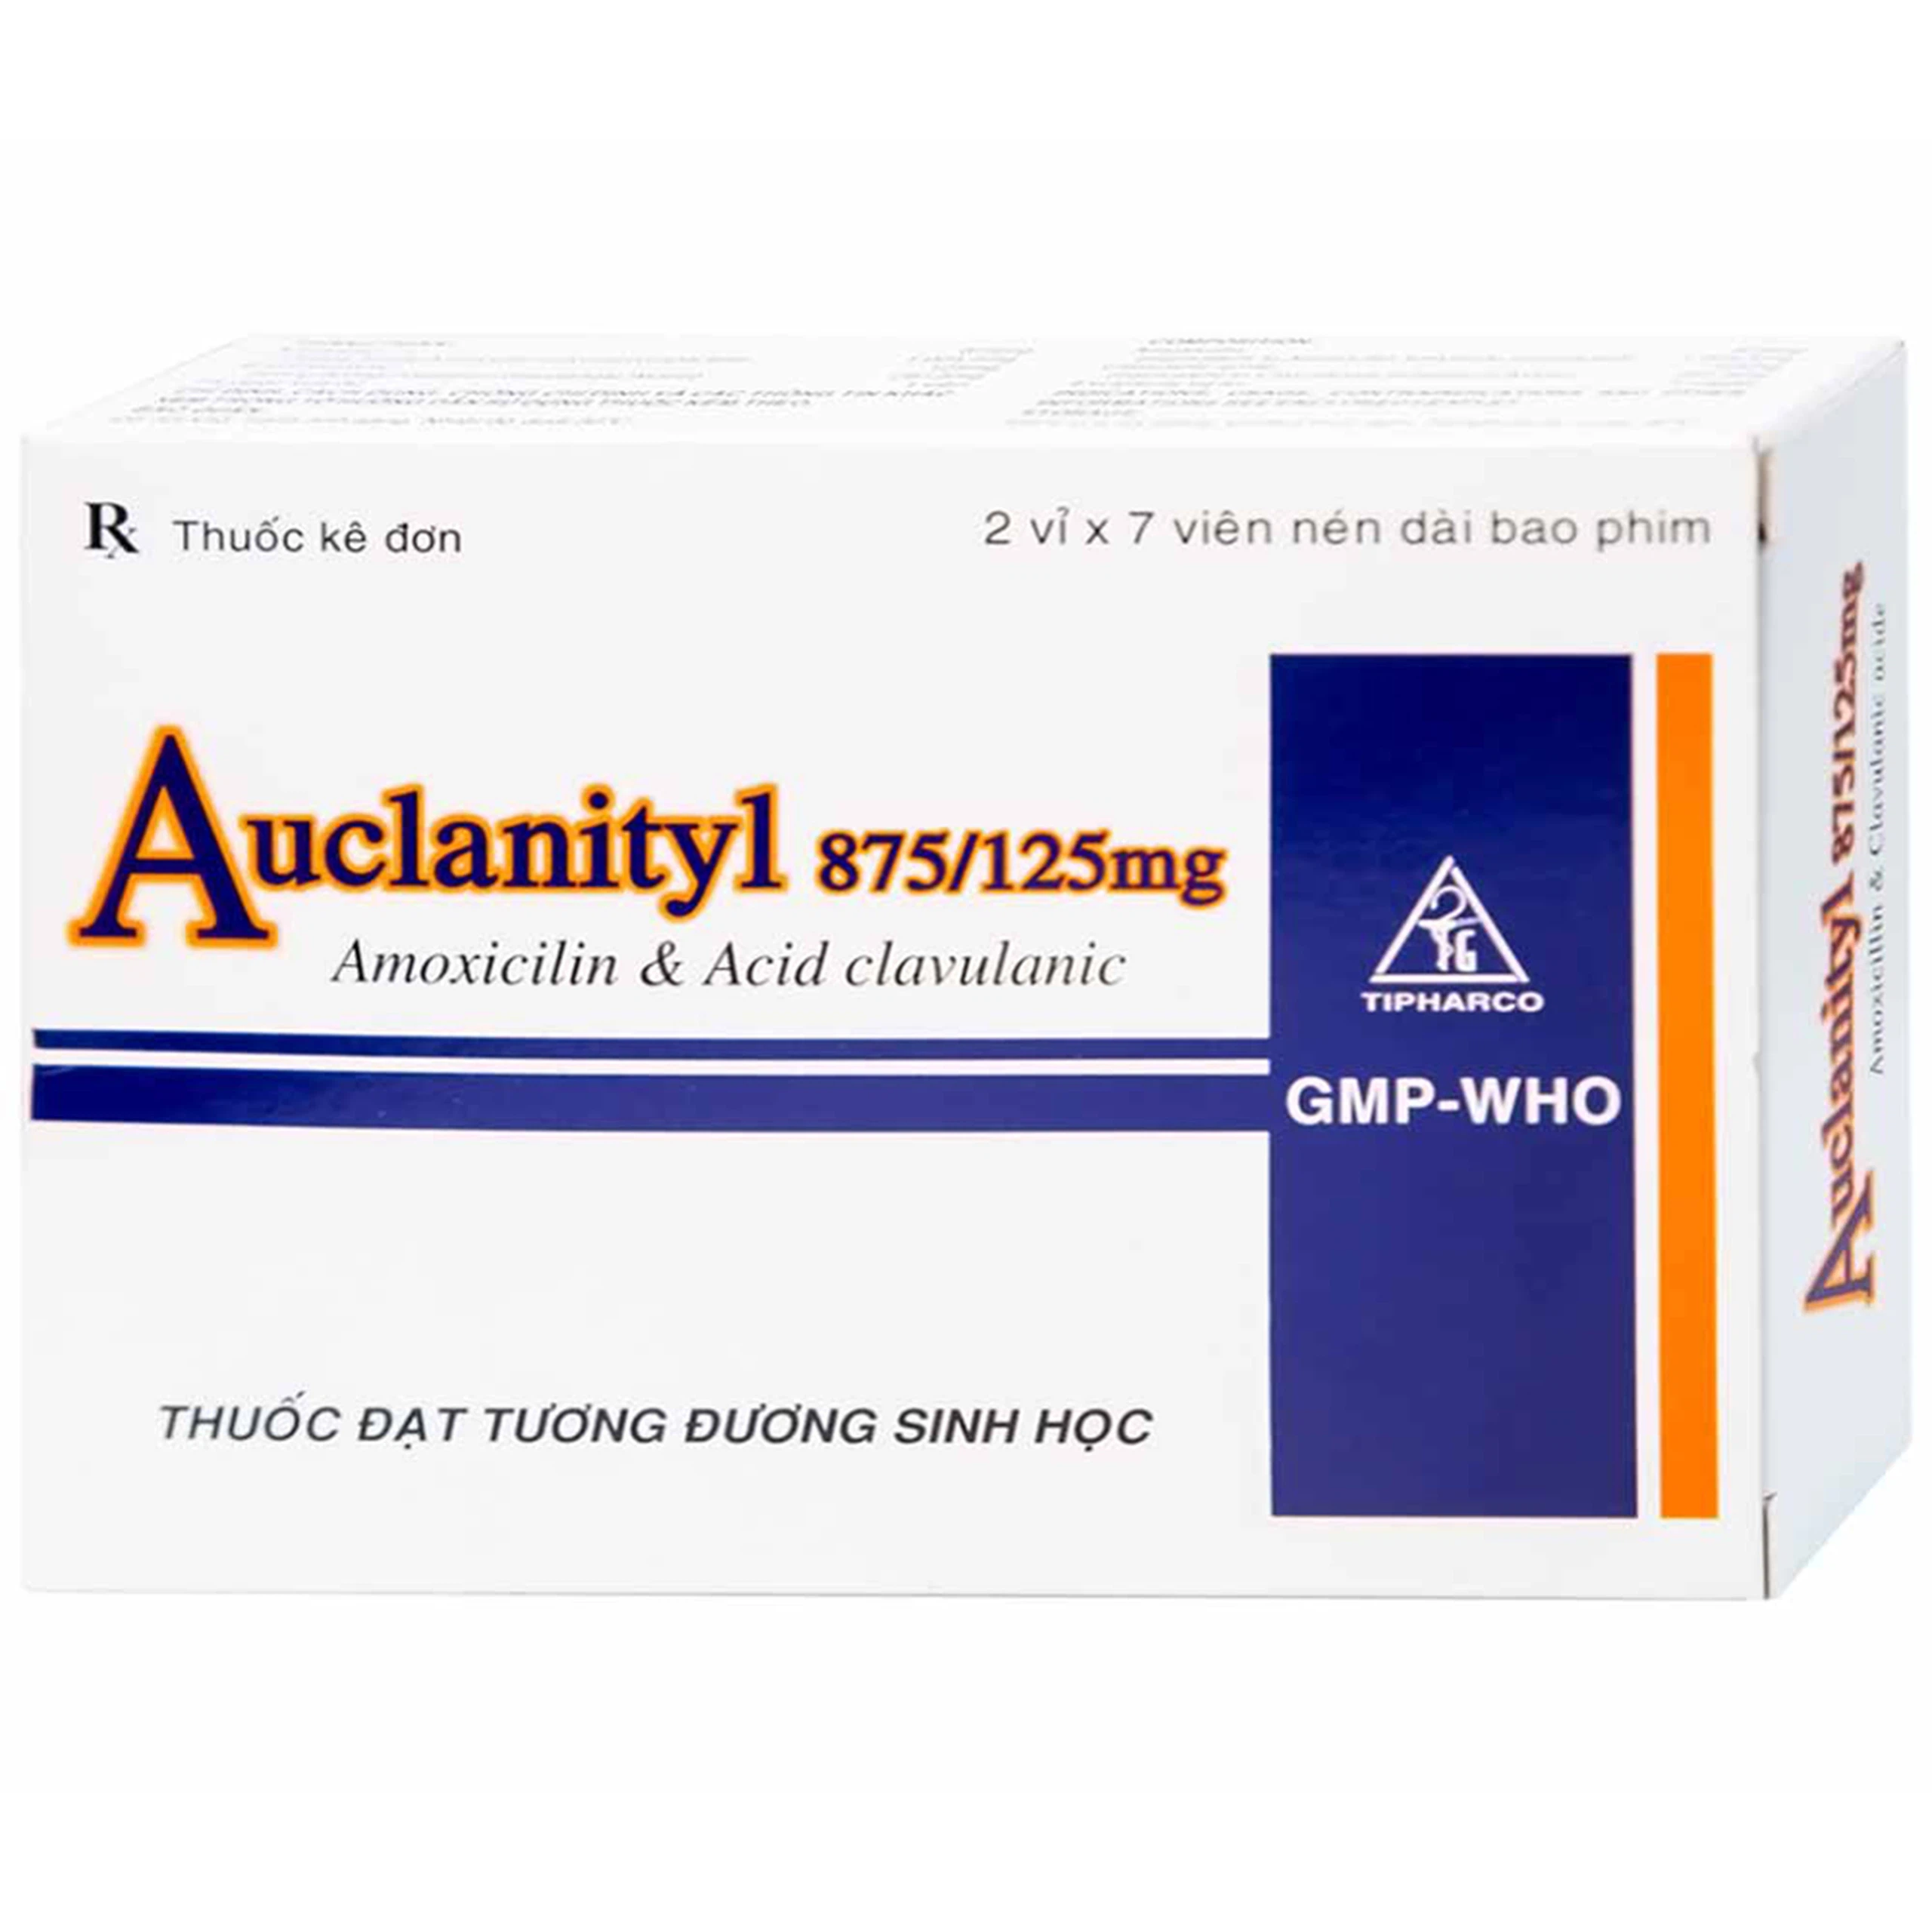 Thuốc  Auclanityl 875/125mg Tipharco điều trị nhiễm khuẩn (2 vỉ x 7 viên)